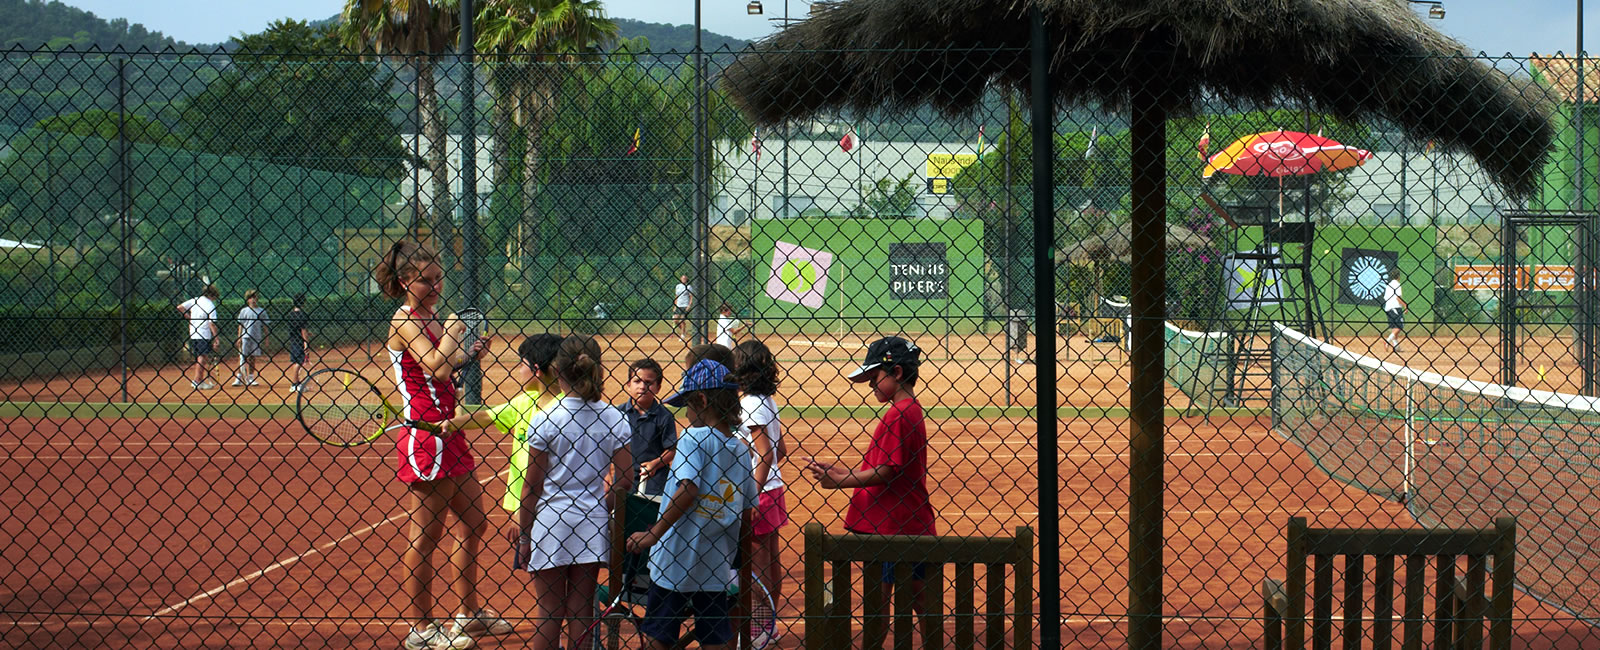 Tennis & Pàdel Piper's - Escola